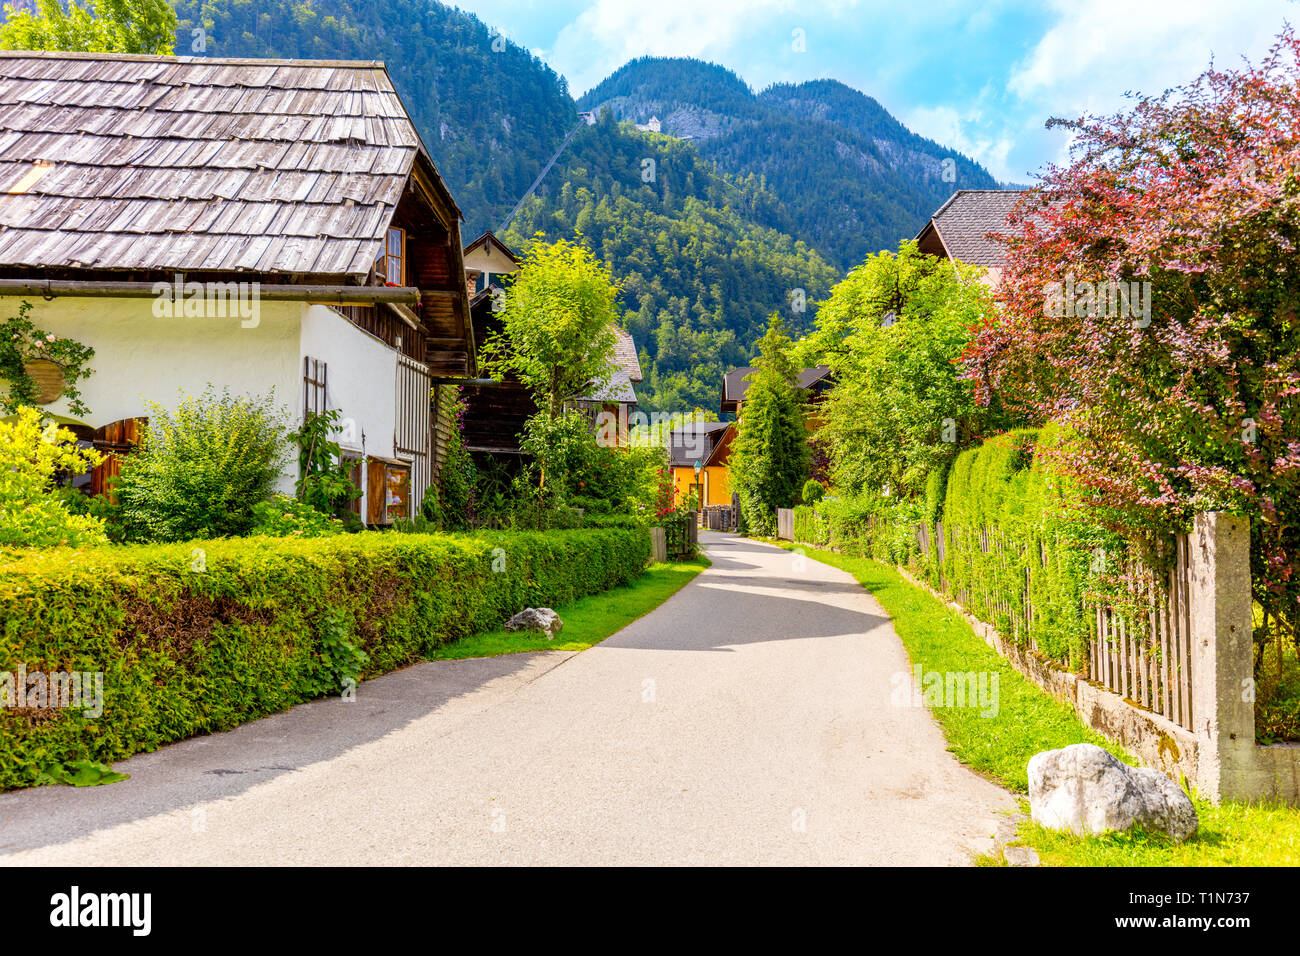 Schöne kleine europäische Stadt villadge in Berge, Straßen und Häuser, Alpen, Hallstatt, Österreich, Europa Stockfoto